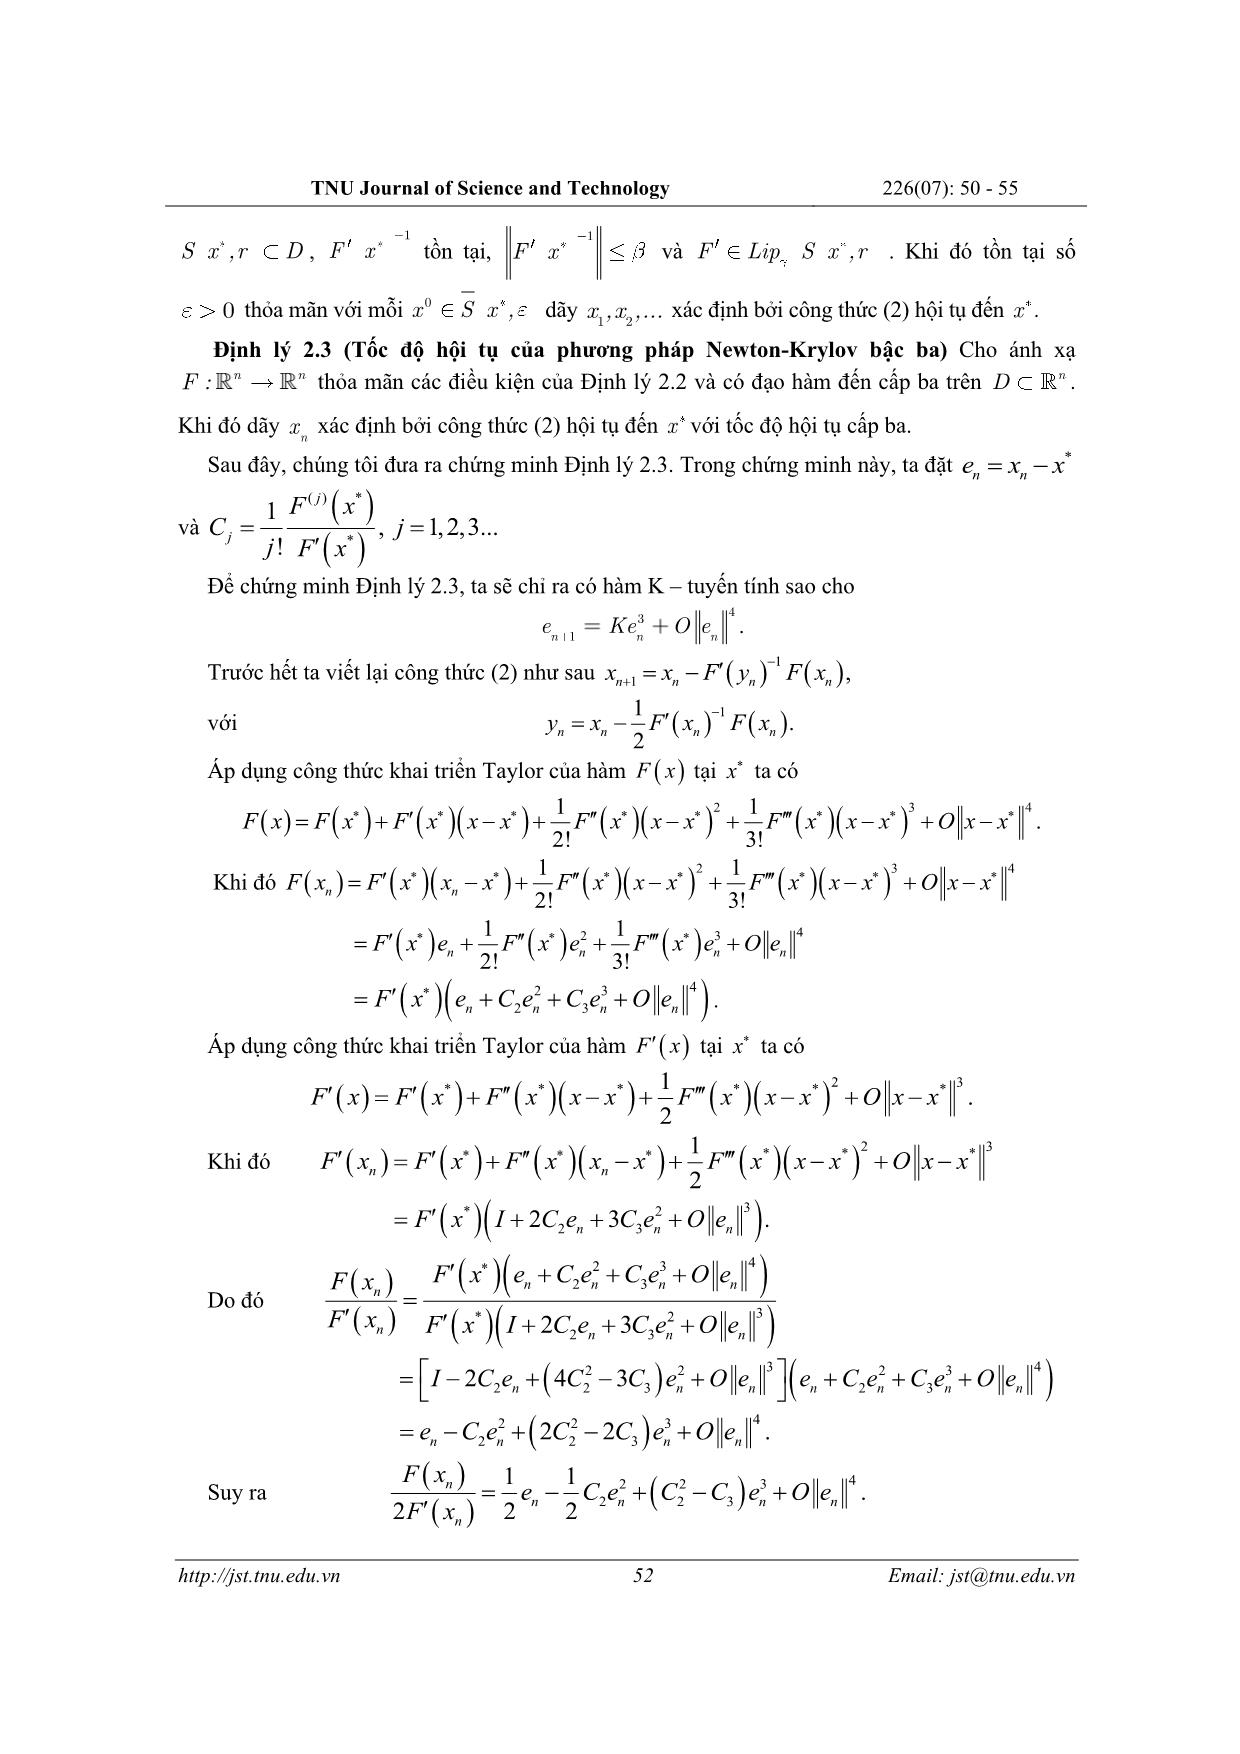 Tốc độ hội tụ của phương pháp Newton – Krylov bậc ba trang 3